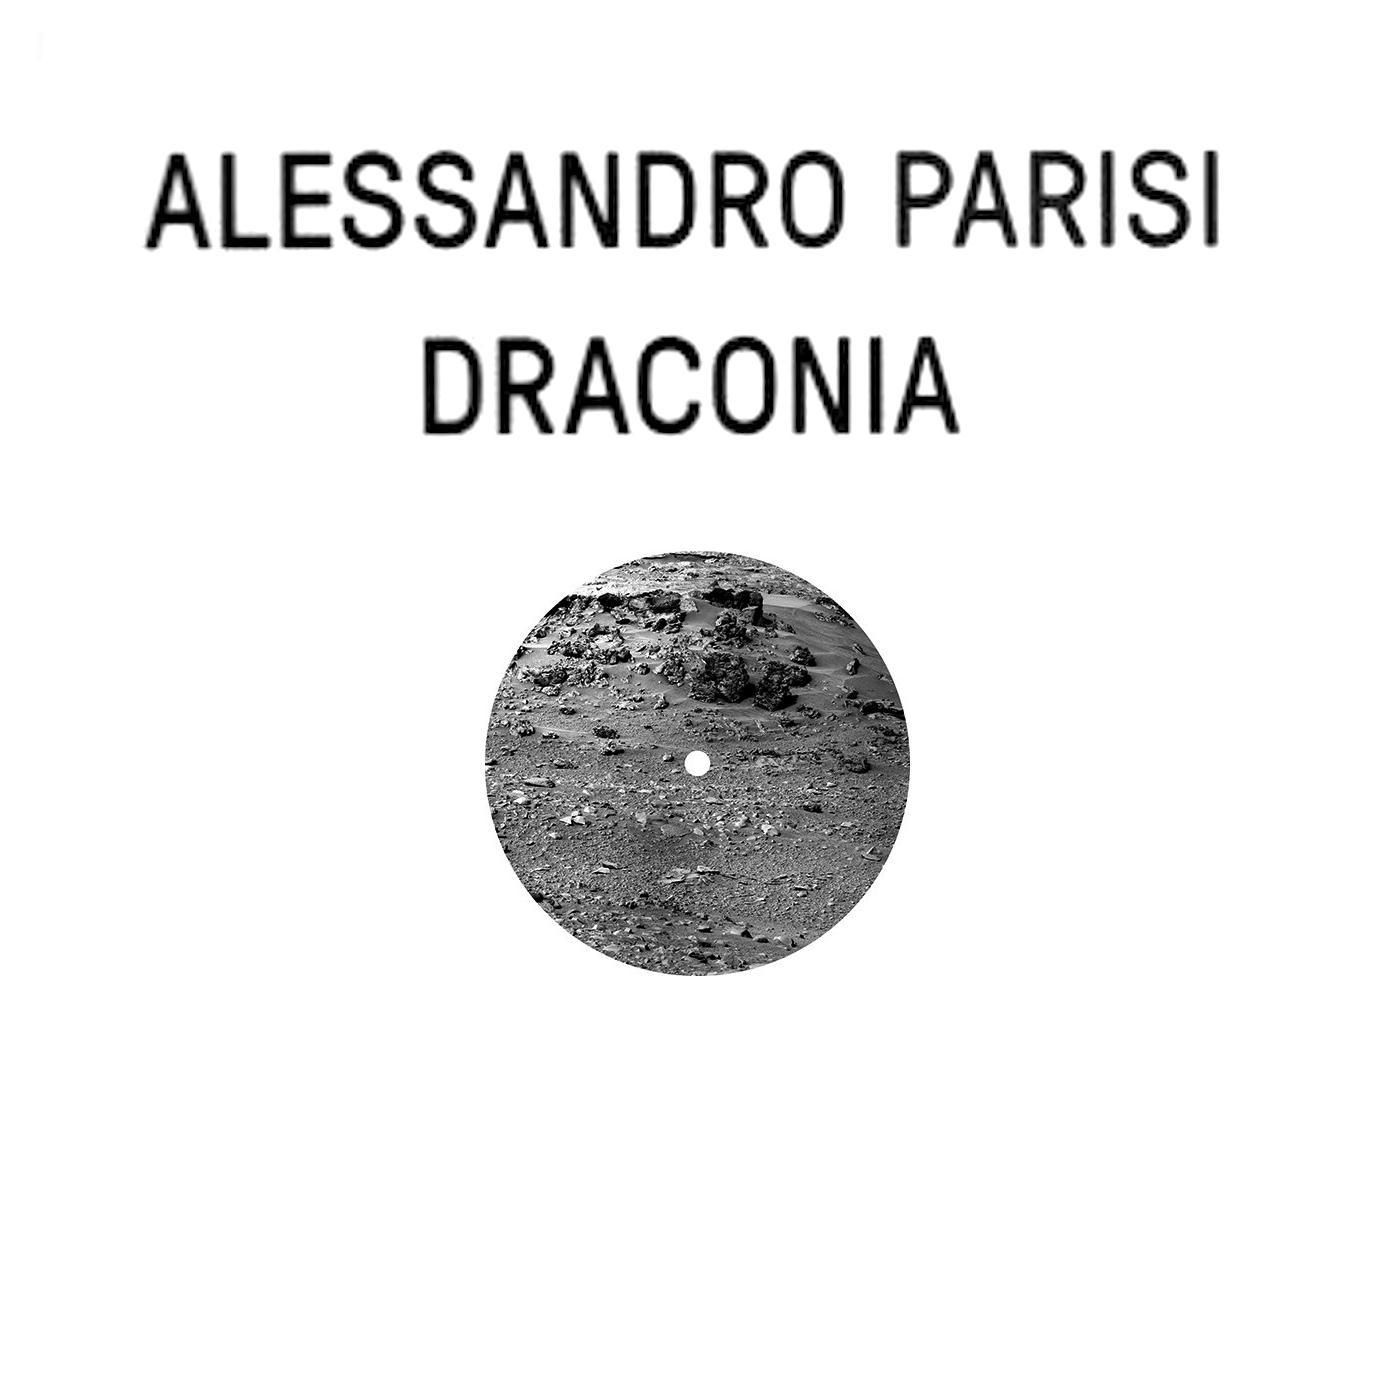 Alessandro Parisi - The Fall of Draconia